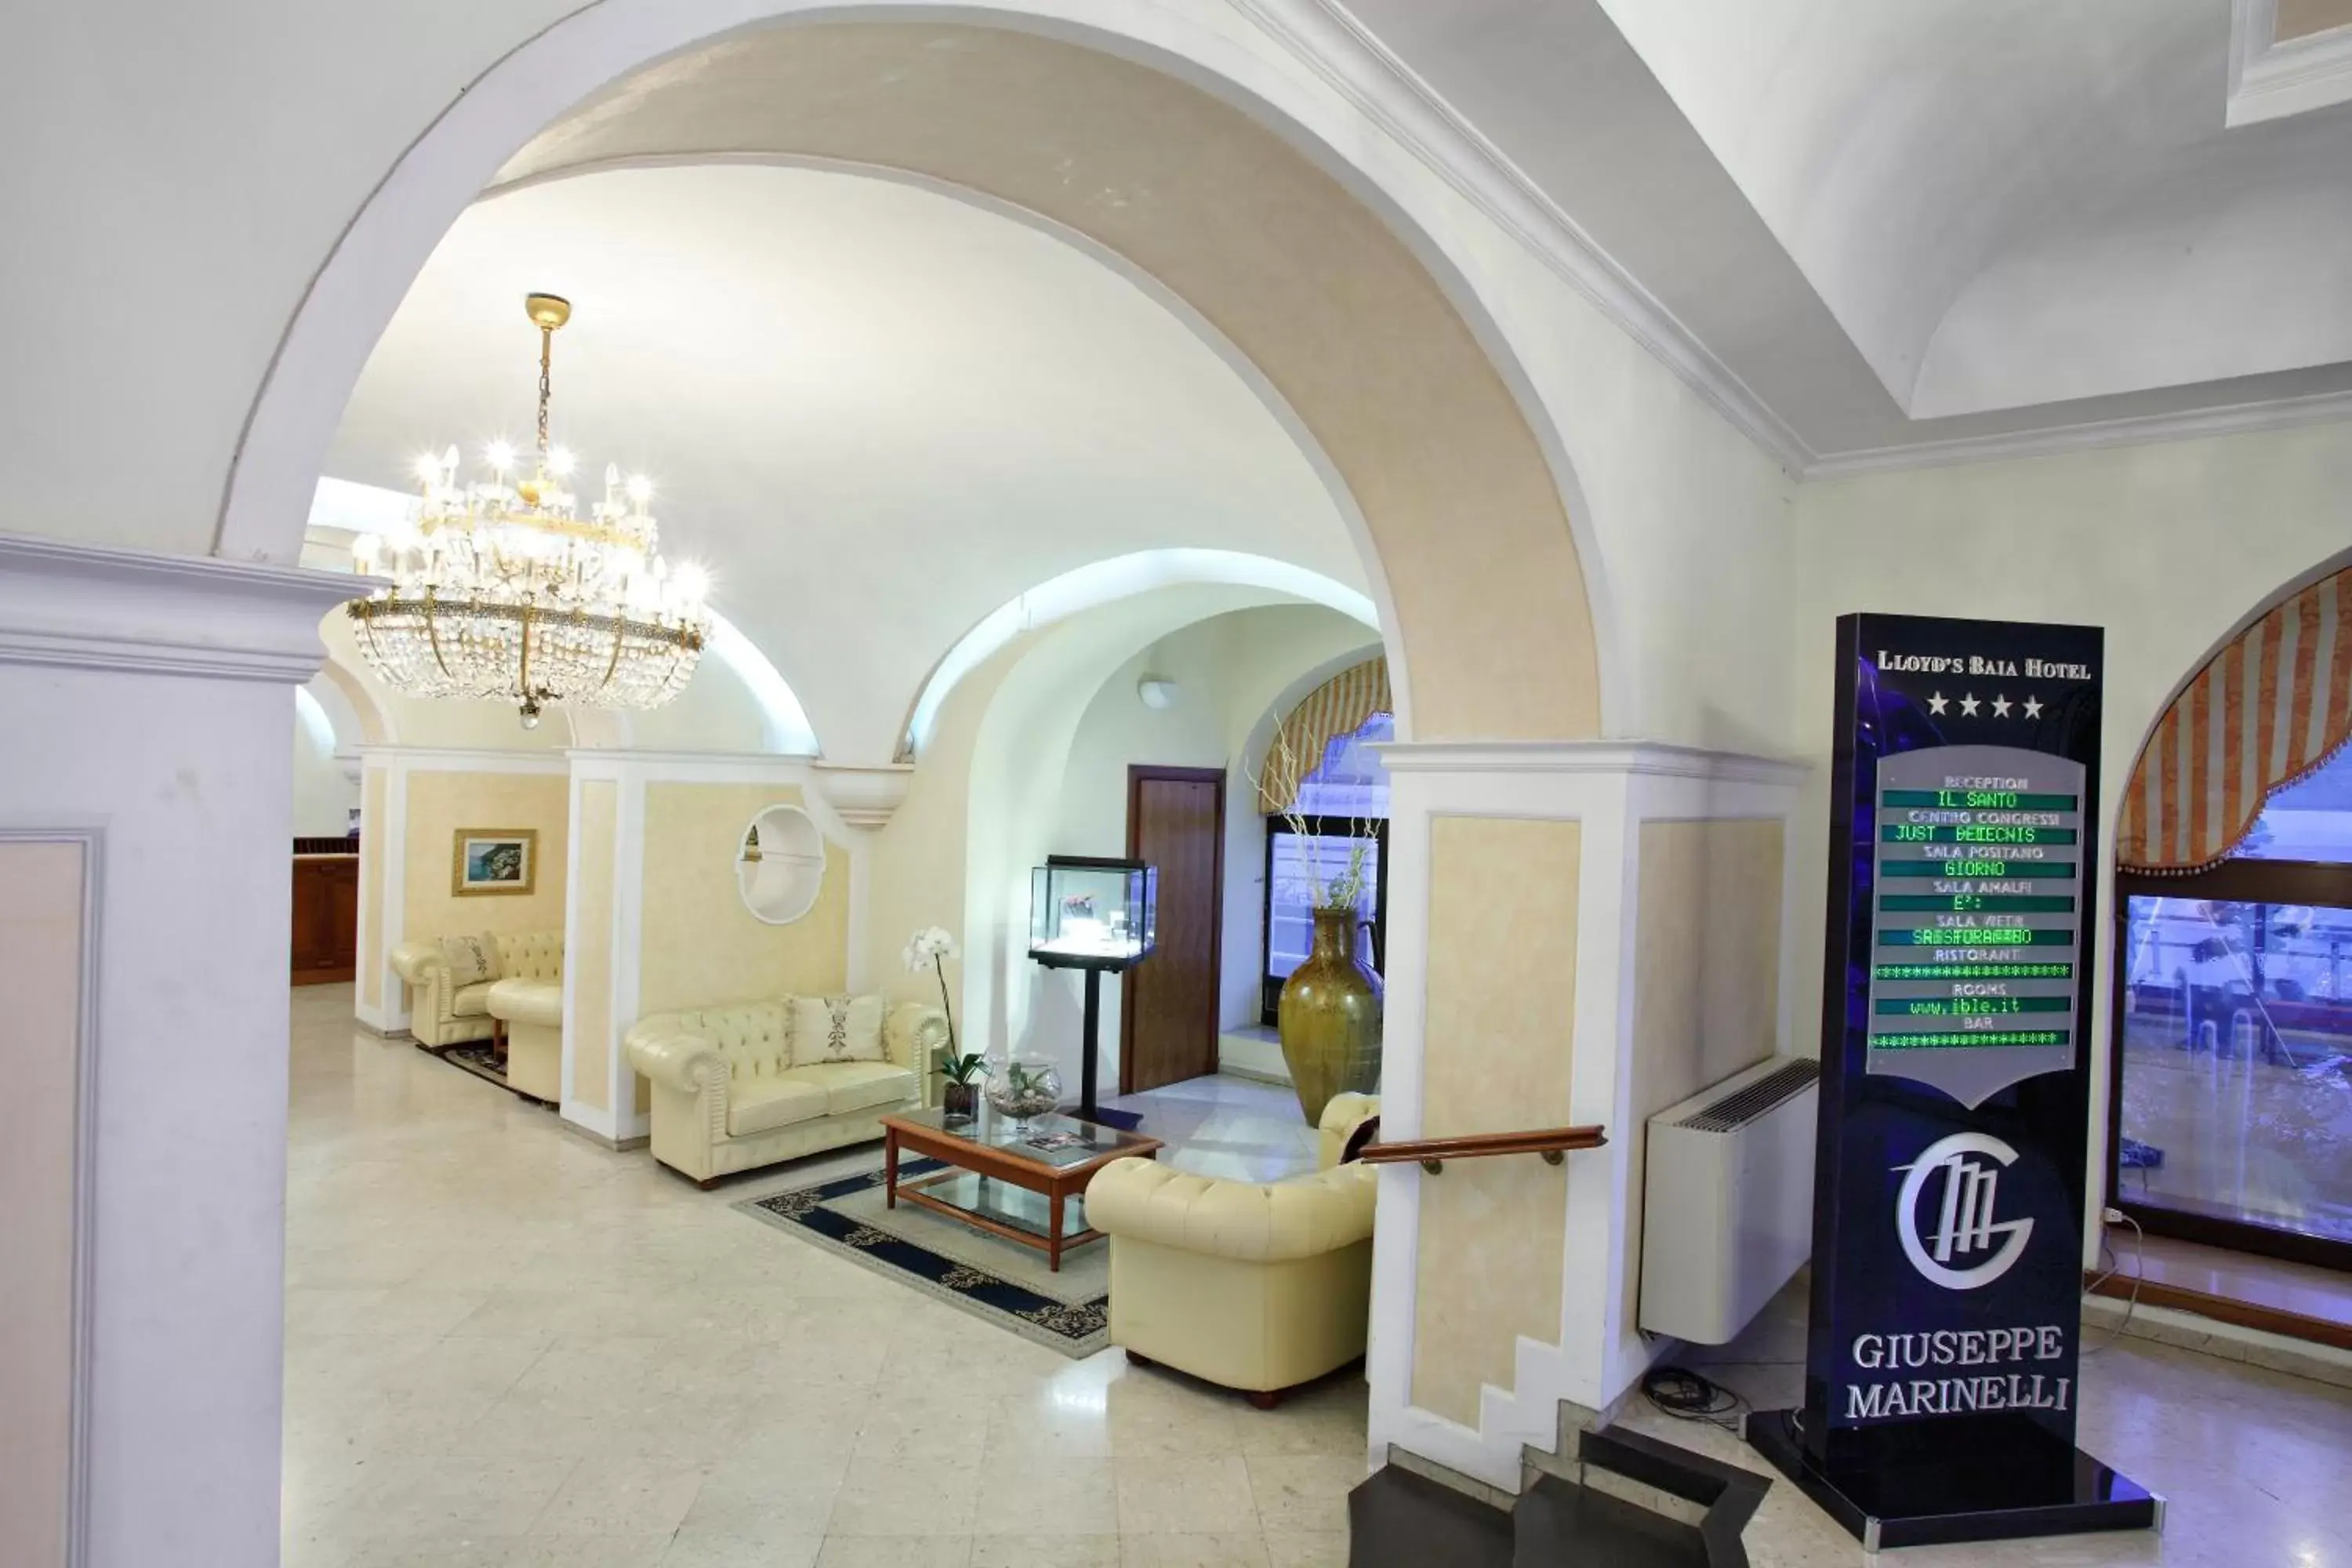 Lobby or reception, Lobby/Reception in Lloyd's Baia Hotel